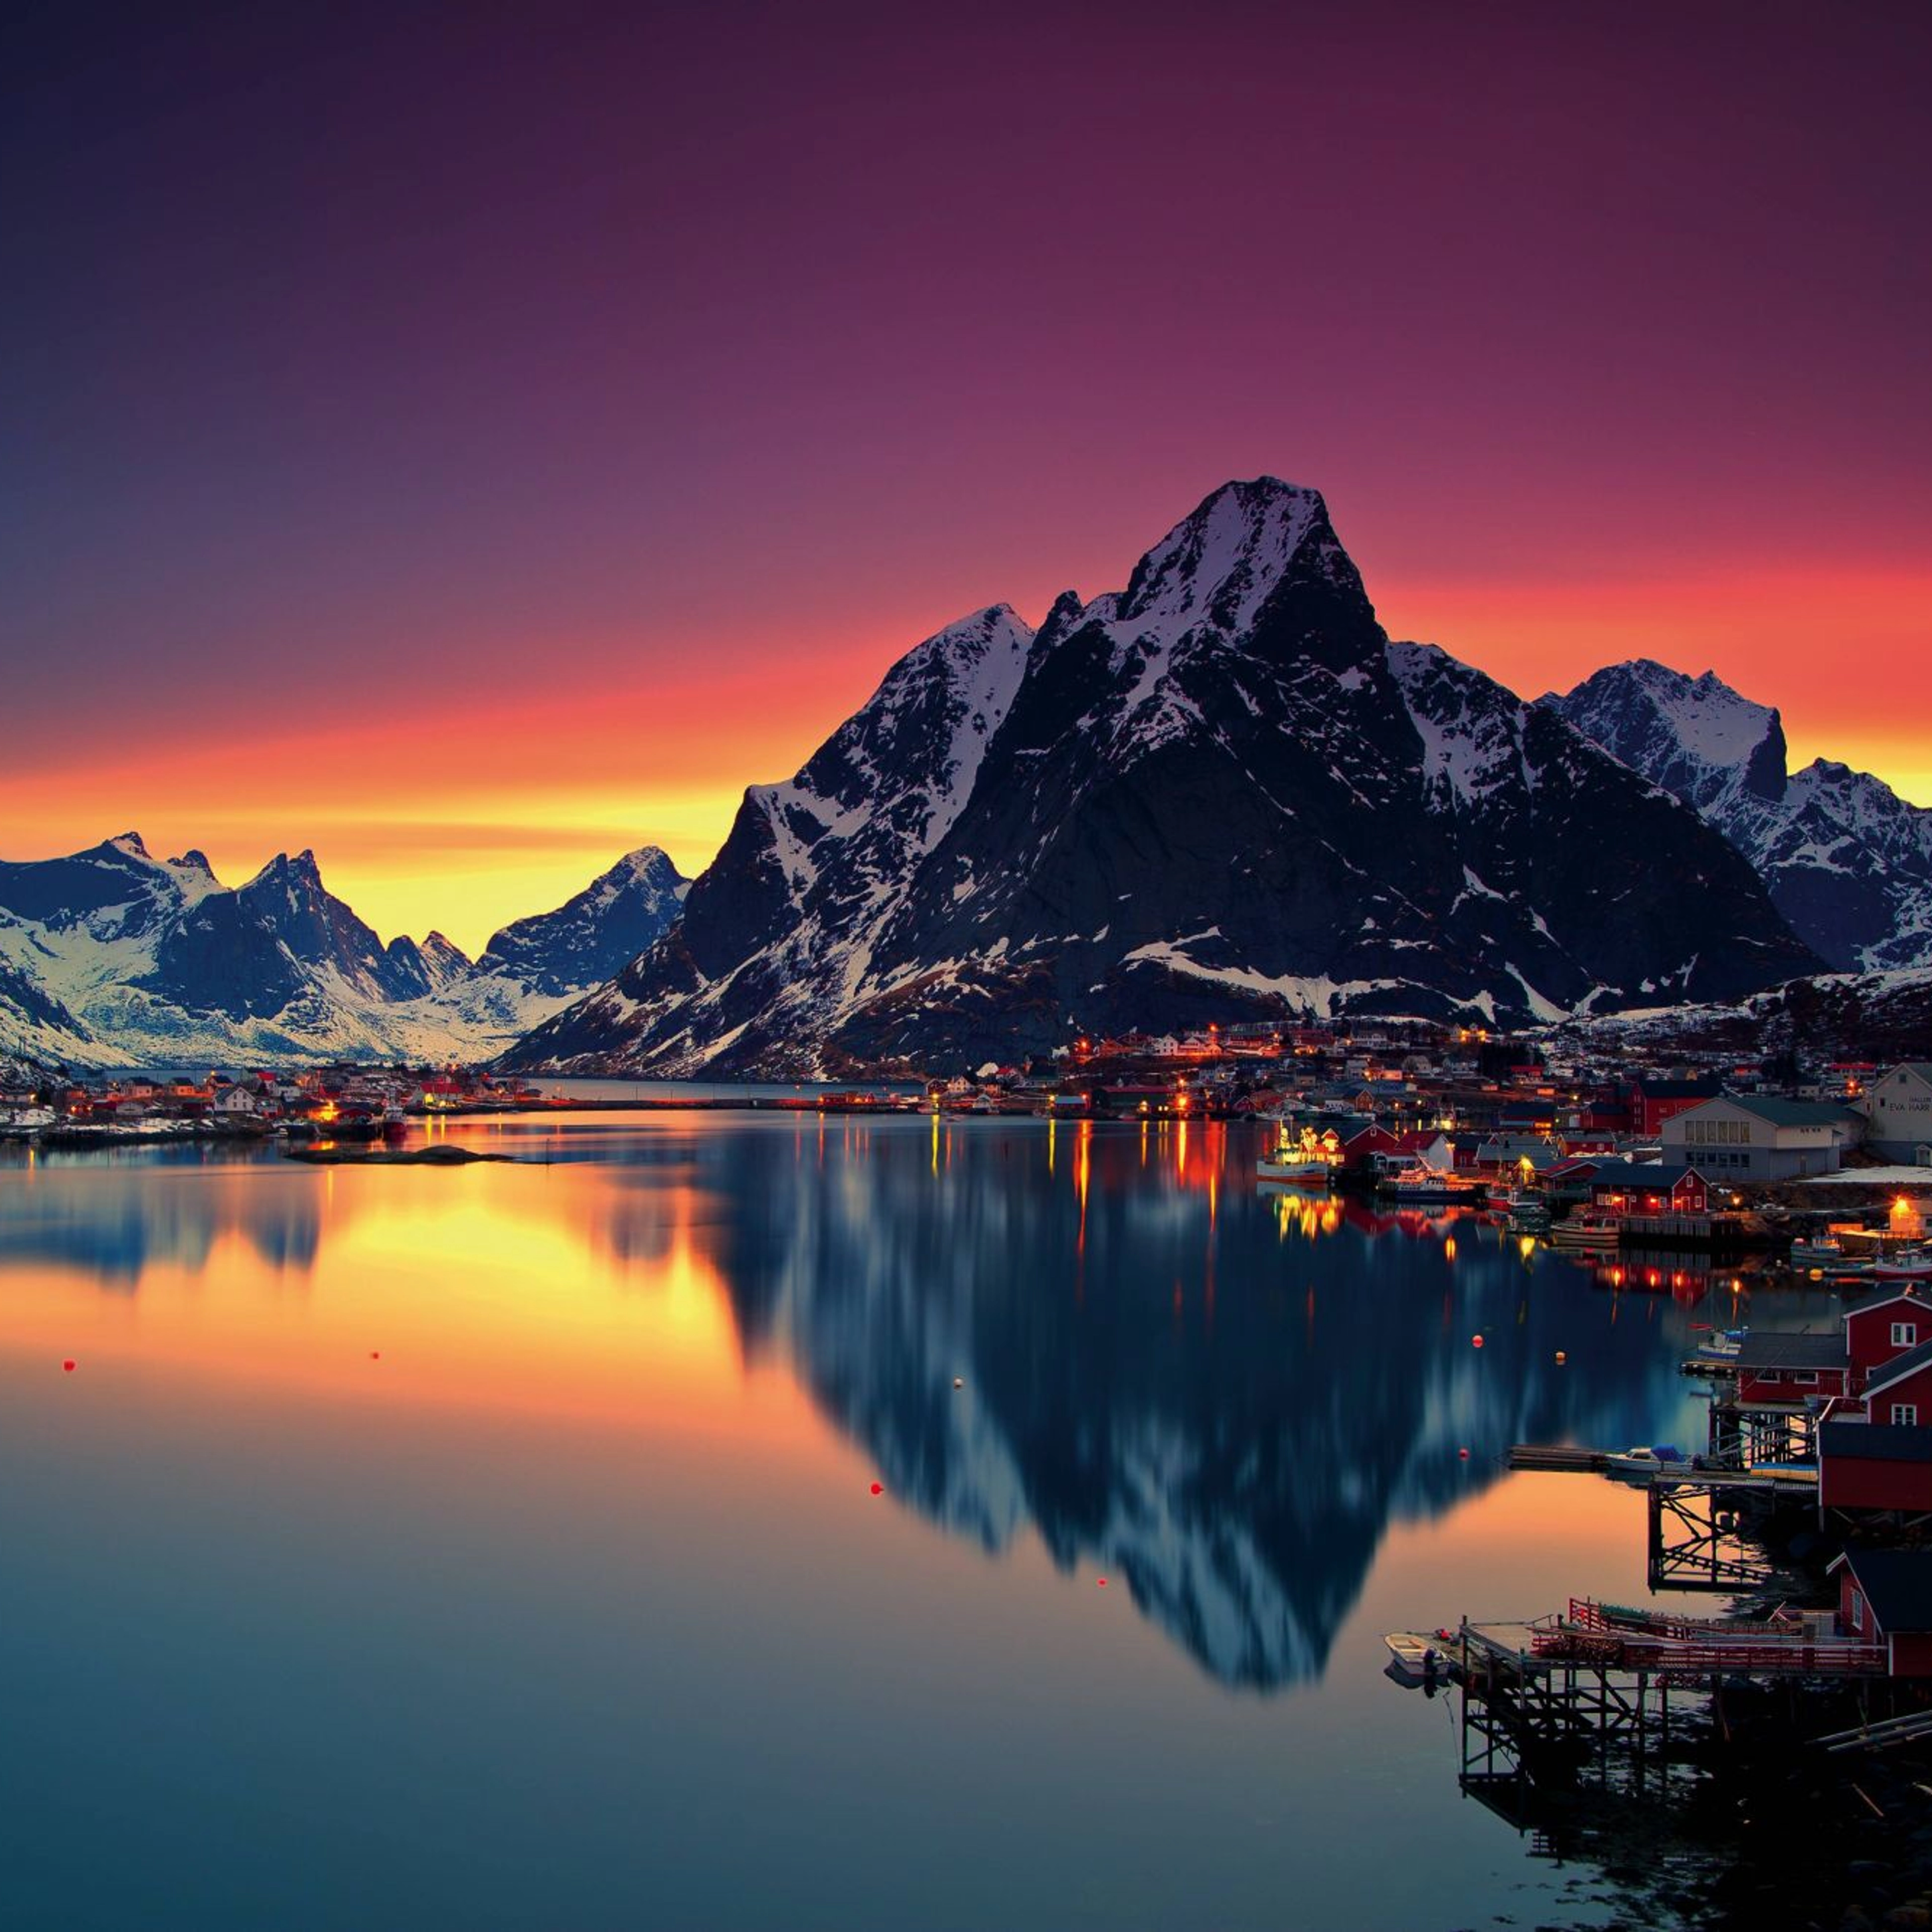 Moskenes - Lofoten Islands, Norway